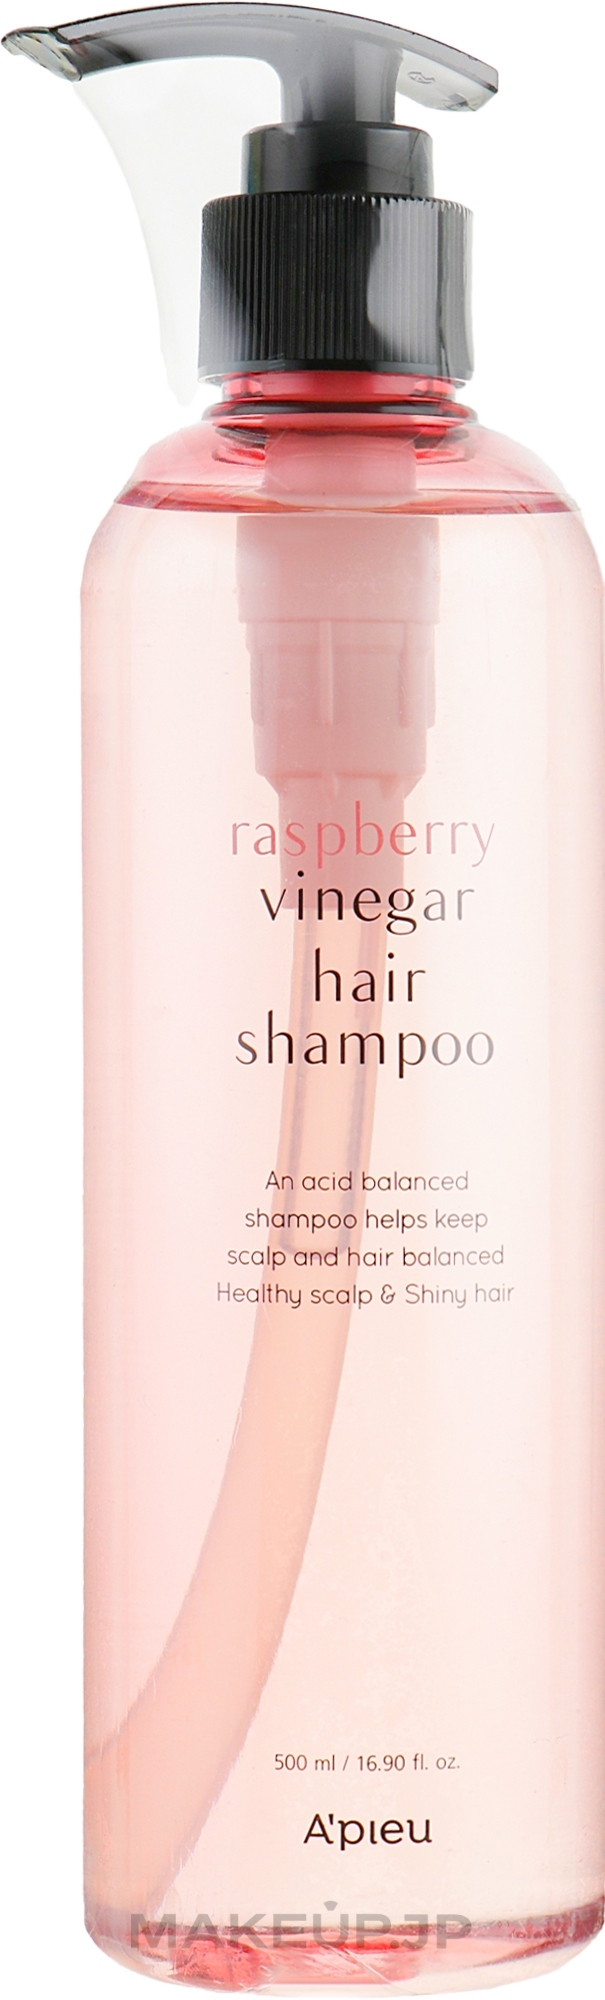 Raspberry Vinegar Shampoo - A'pieu Raspberry Vinegar Hair Shampoo — photo 500 ml